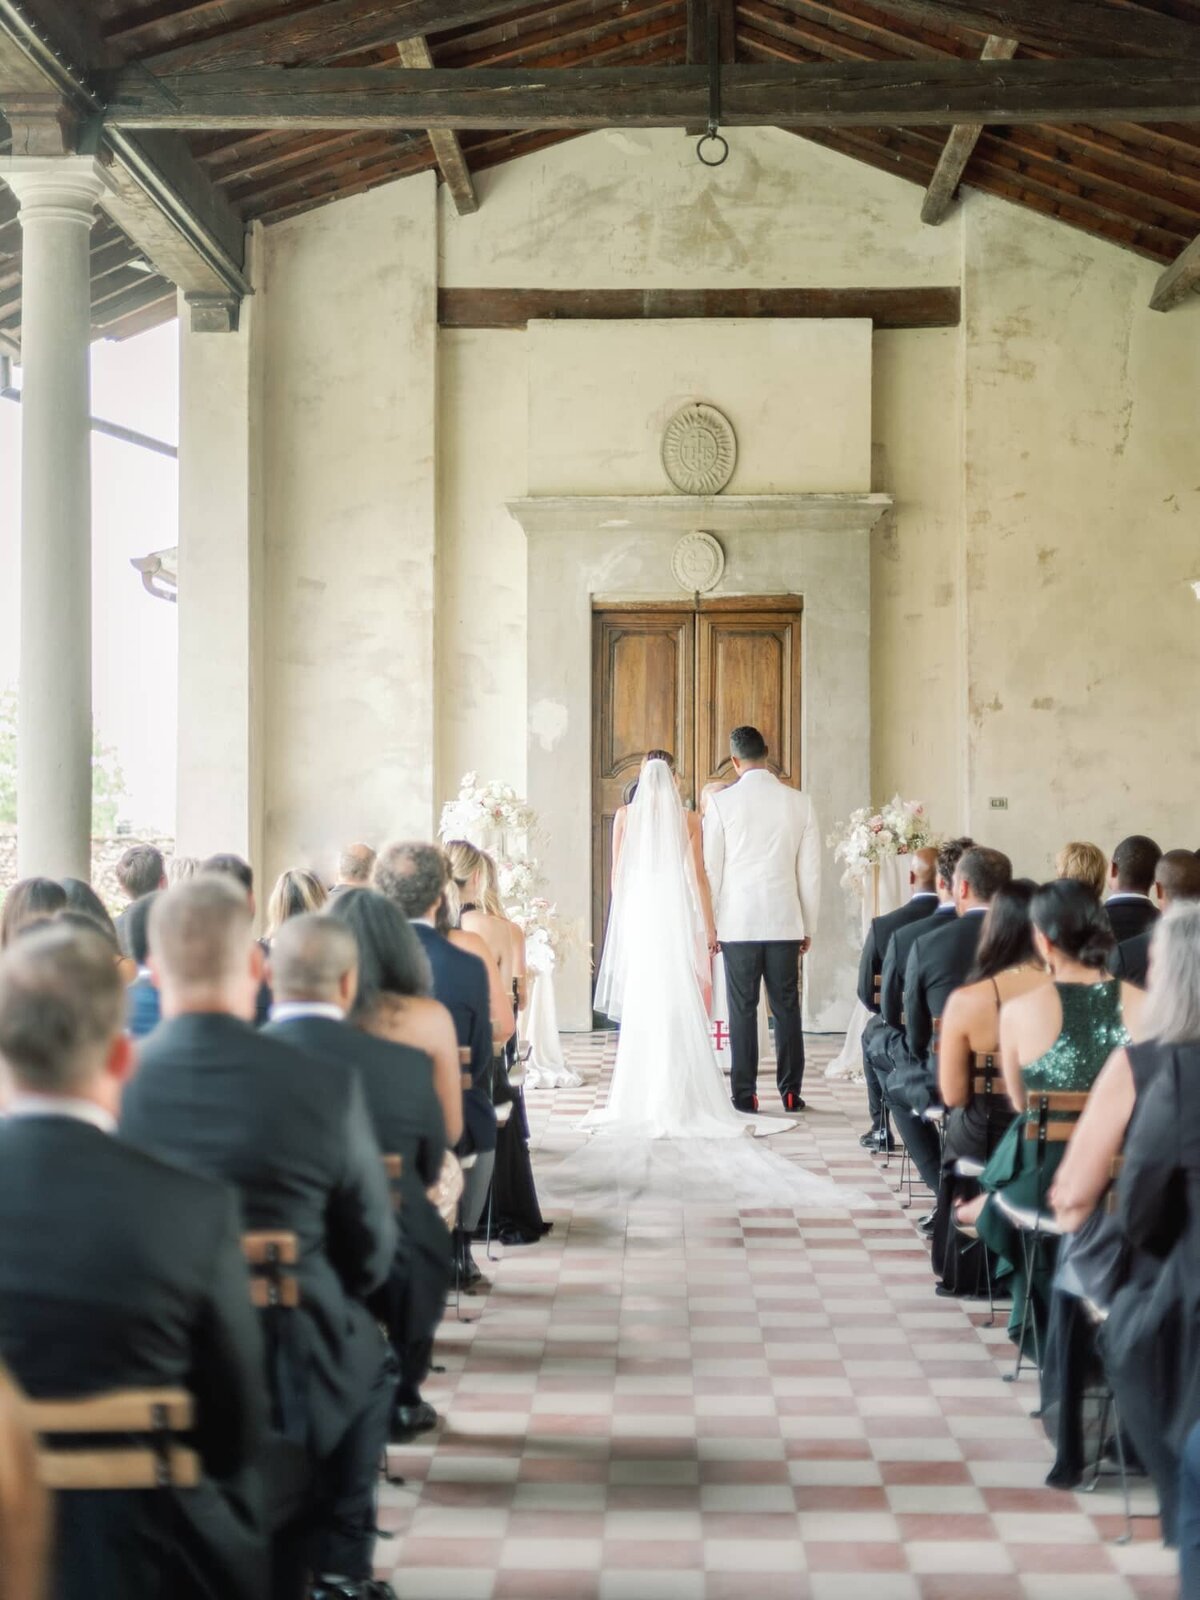 AndreasKGeorgiou-Tuscany-wedding-Italy-43